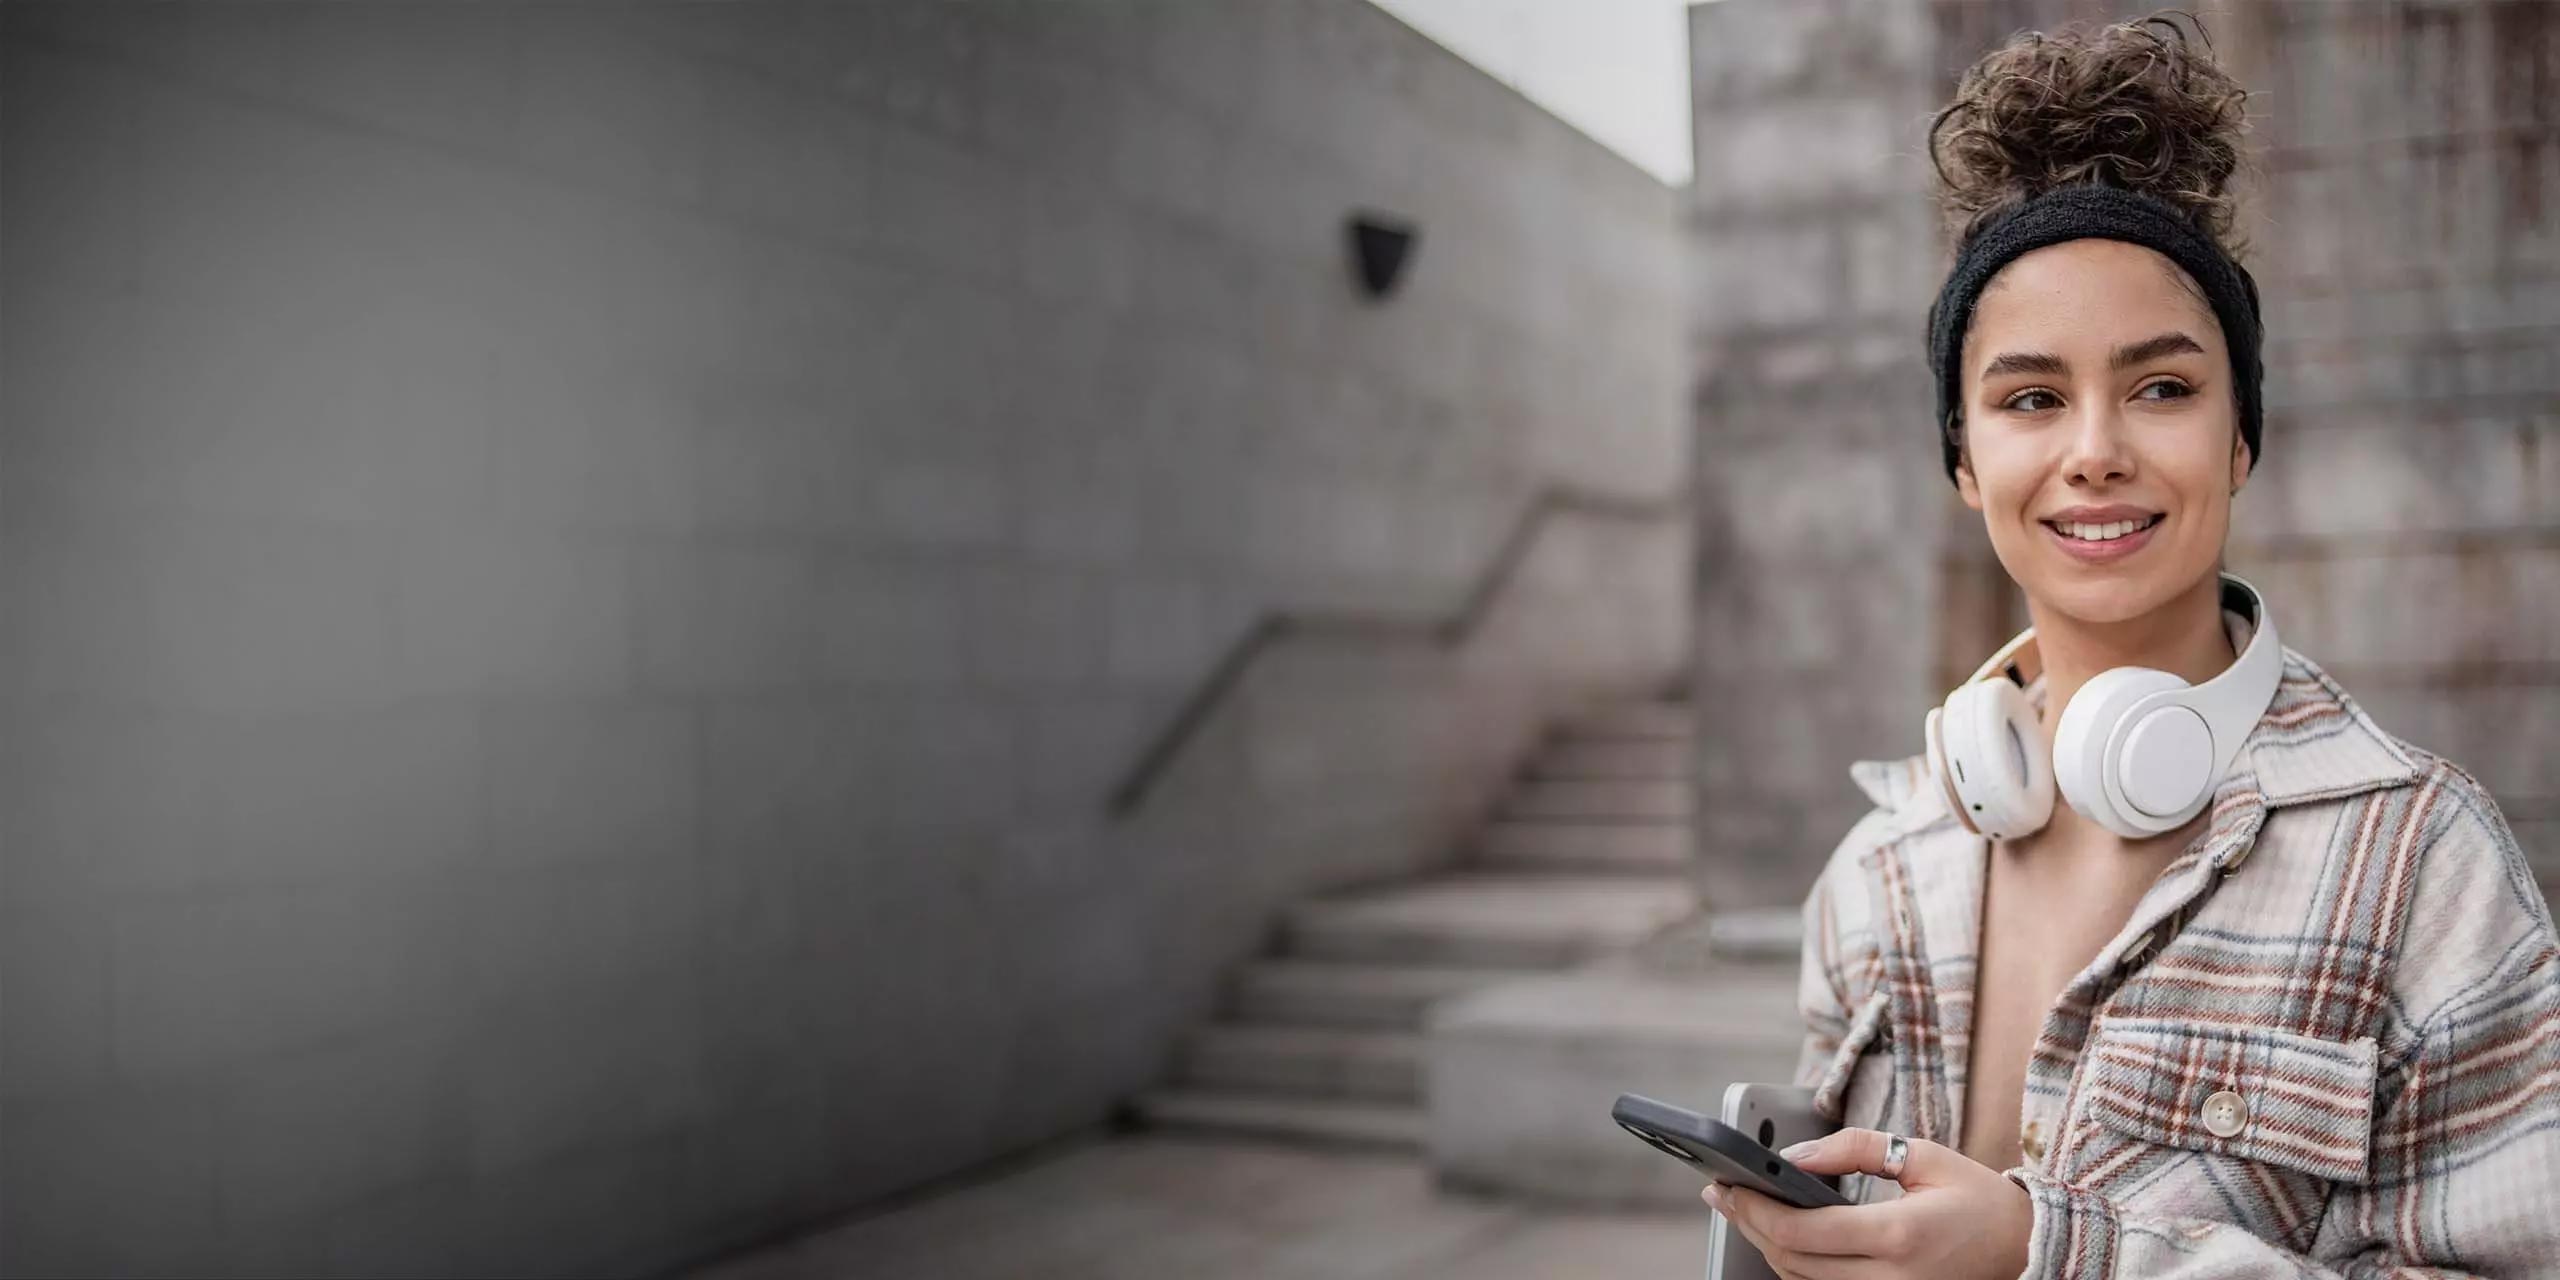 Eine junge Frau mit Stirnband und Kopfhörern um den Hals lächelt, während sie ein Smartphone in der Hand hält und auf einer Treppe in einer städtischen Umgebung sitzt.